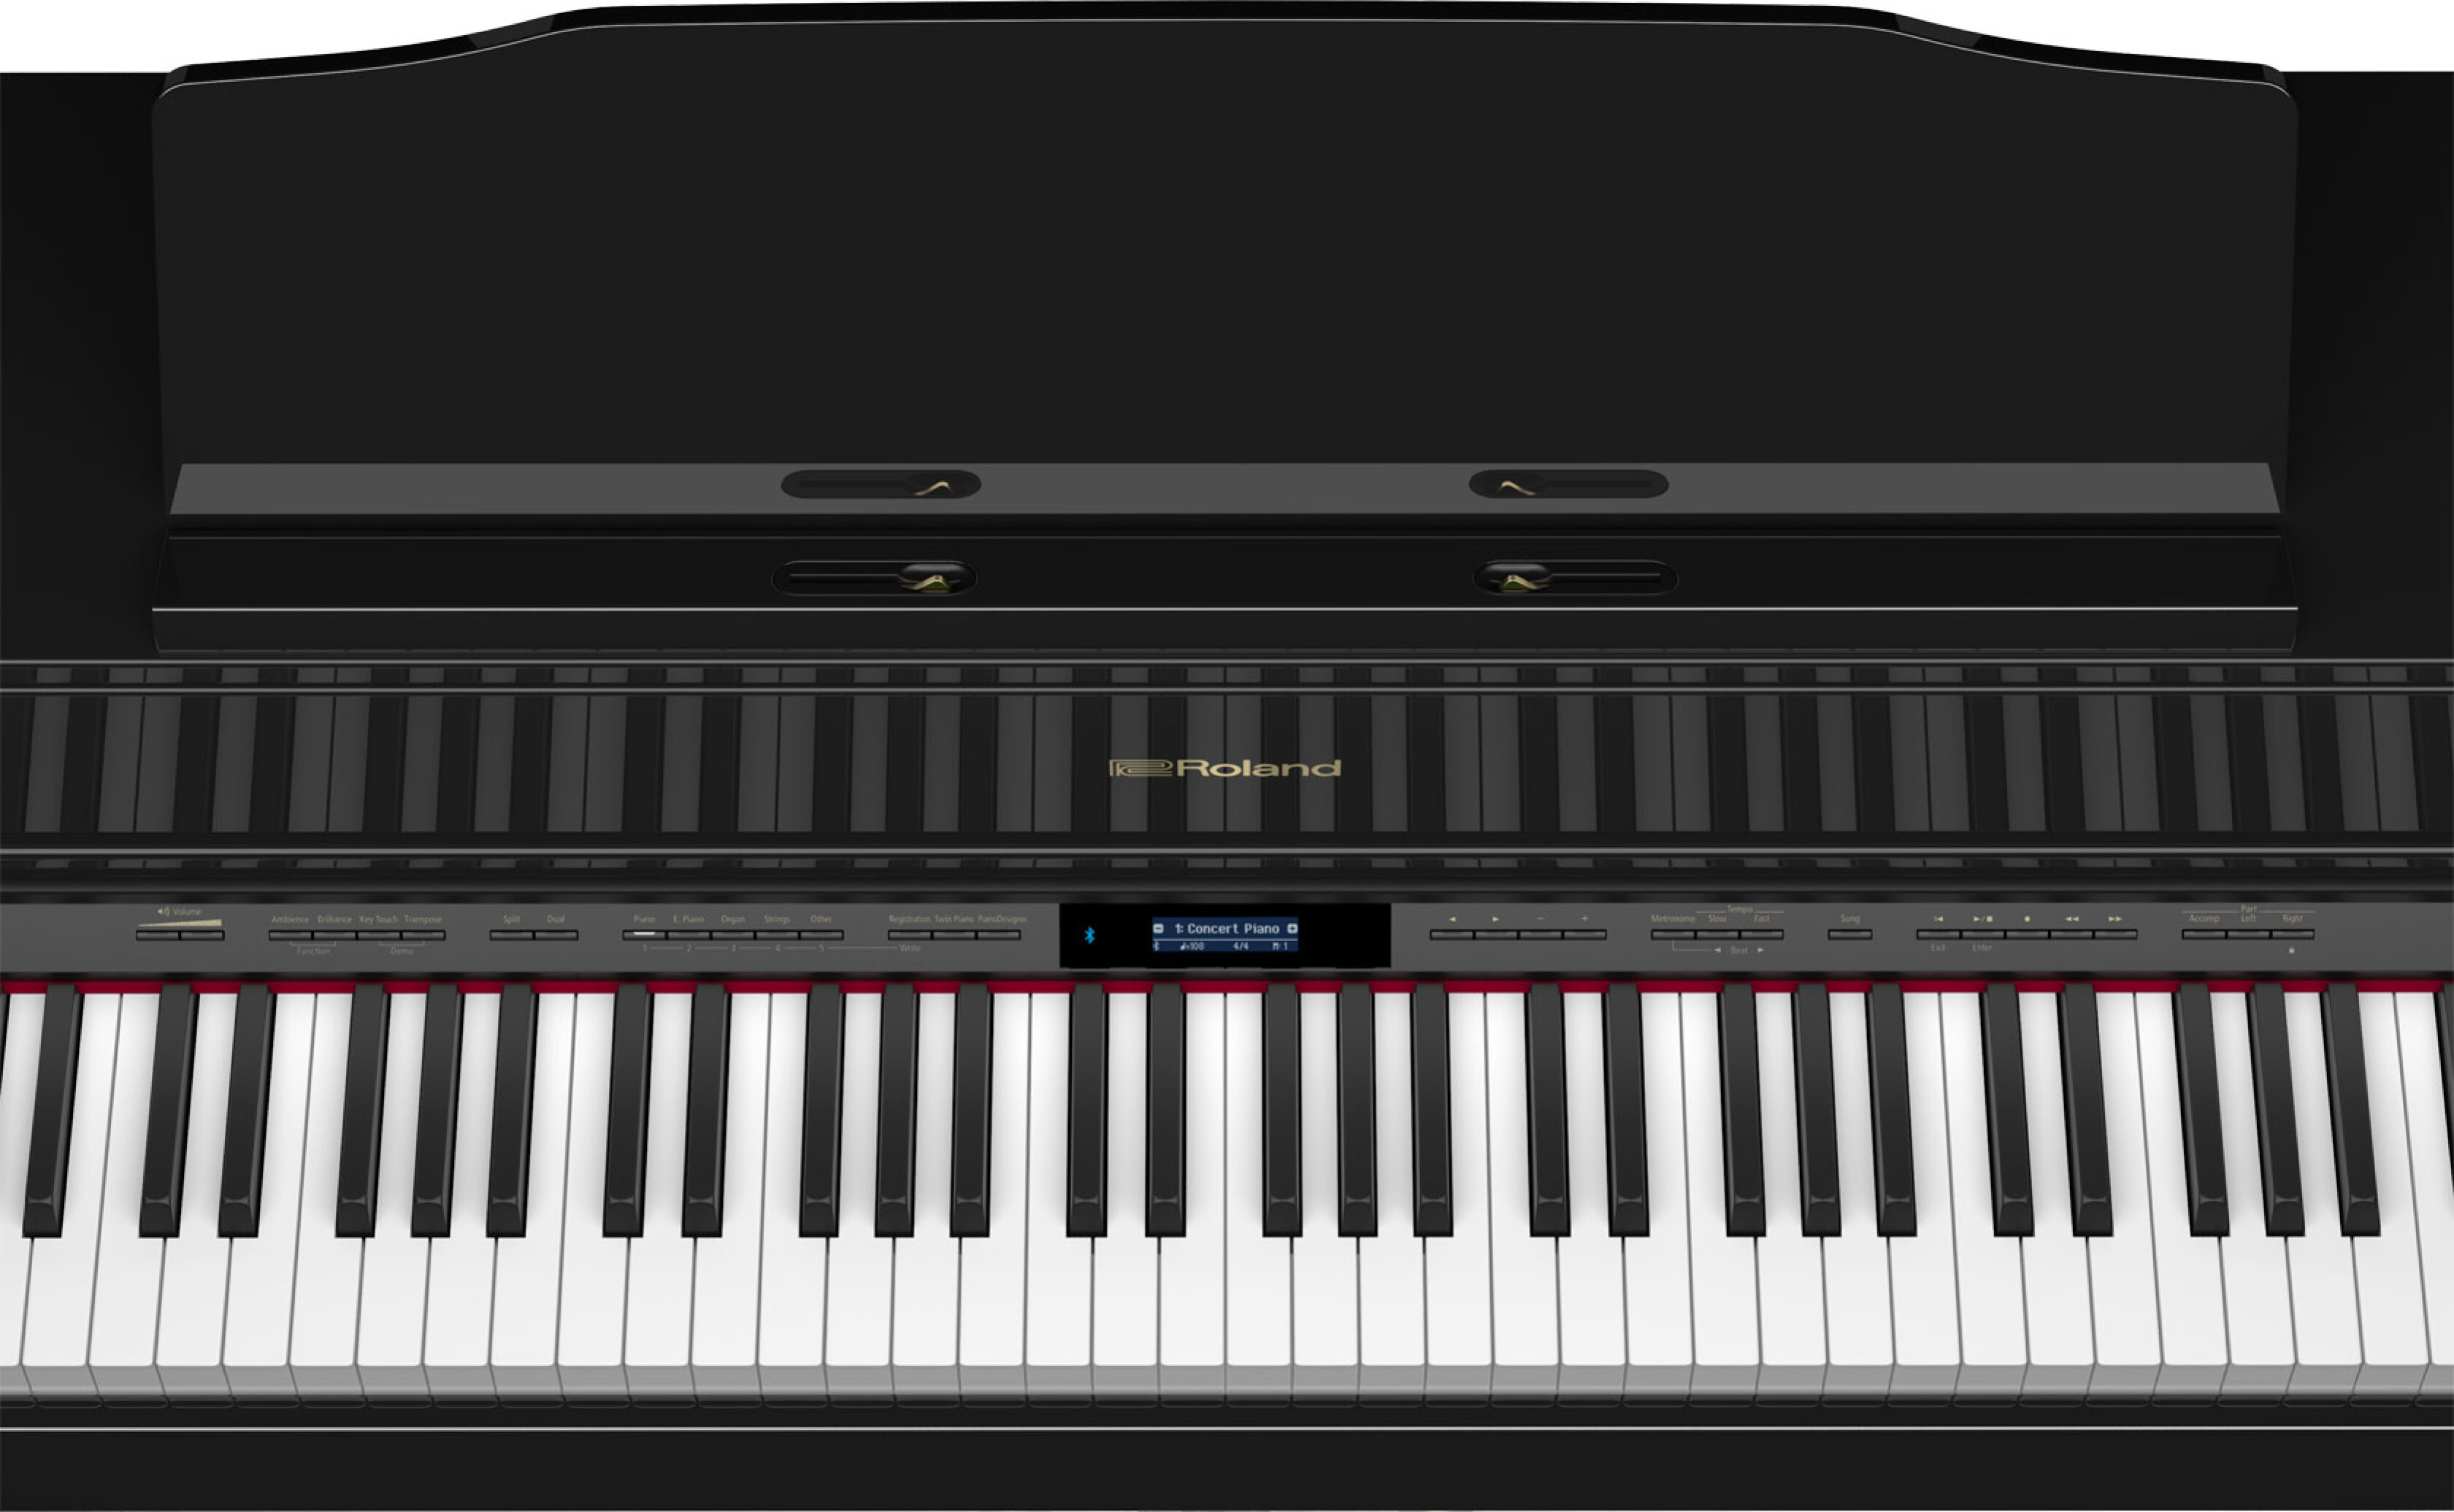  پیانو رولند HP605 